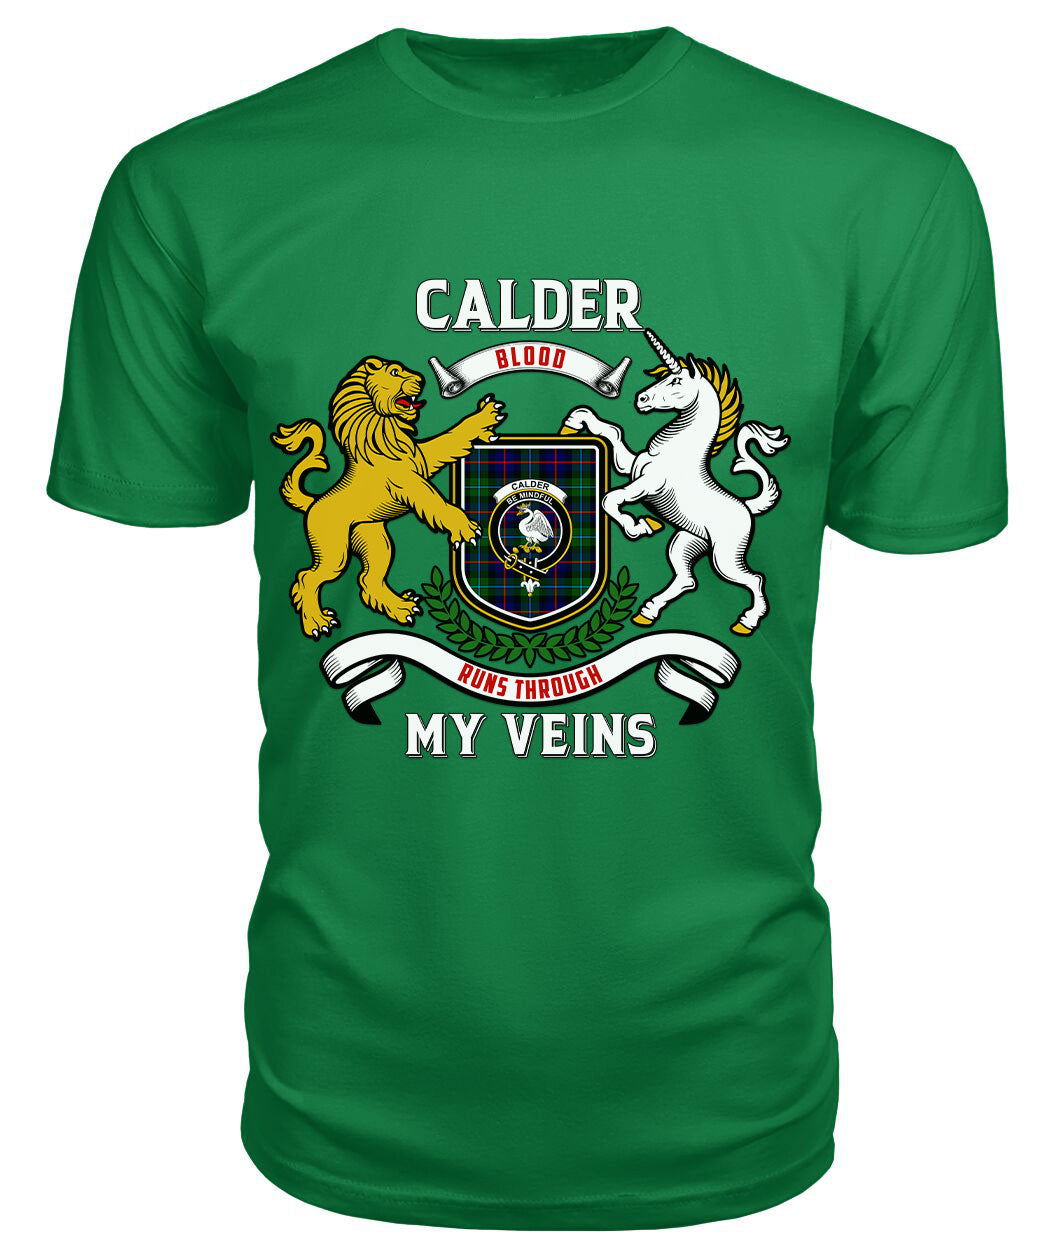 Calder (Calder-Campbell) Tartan Crest 2D T-shirt - Blood Runs Through My Veins Style